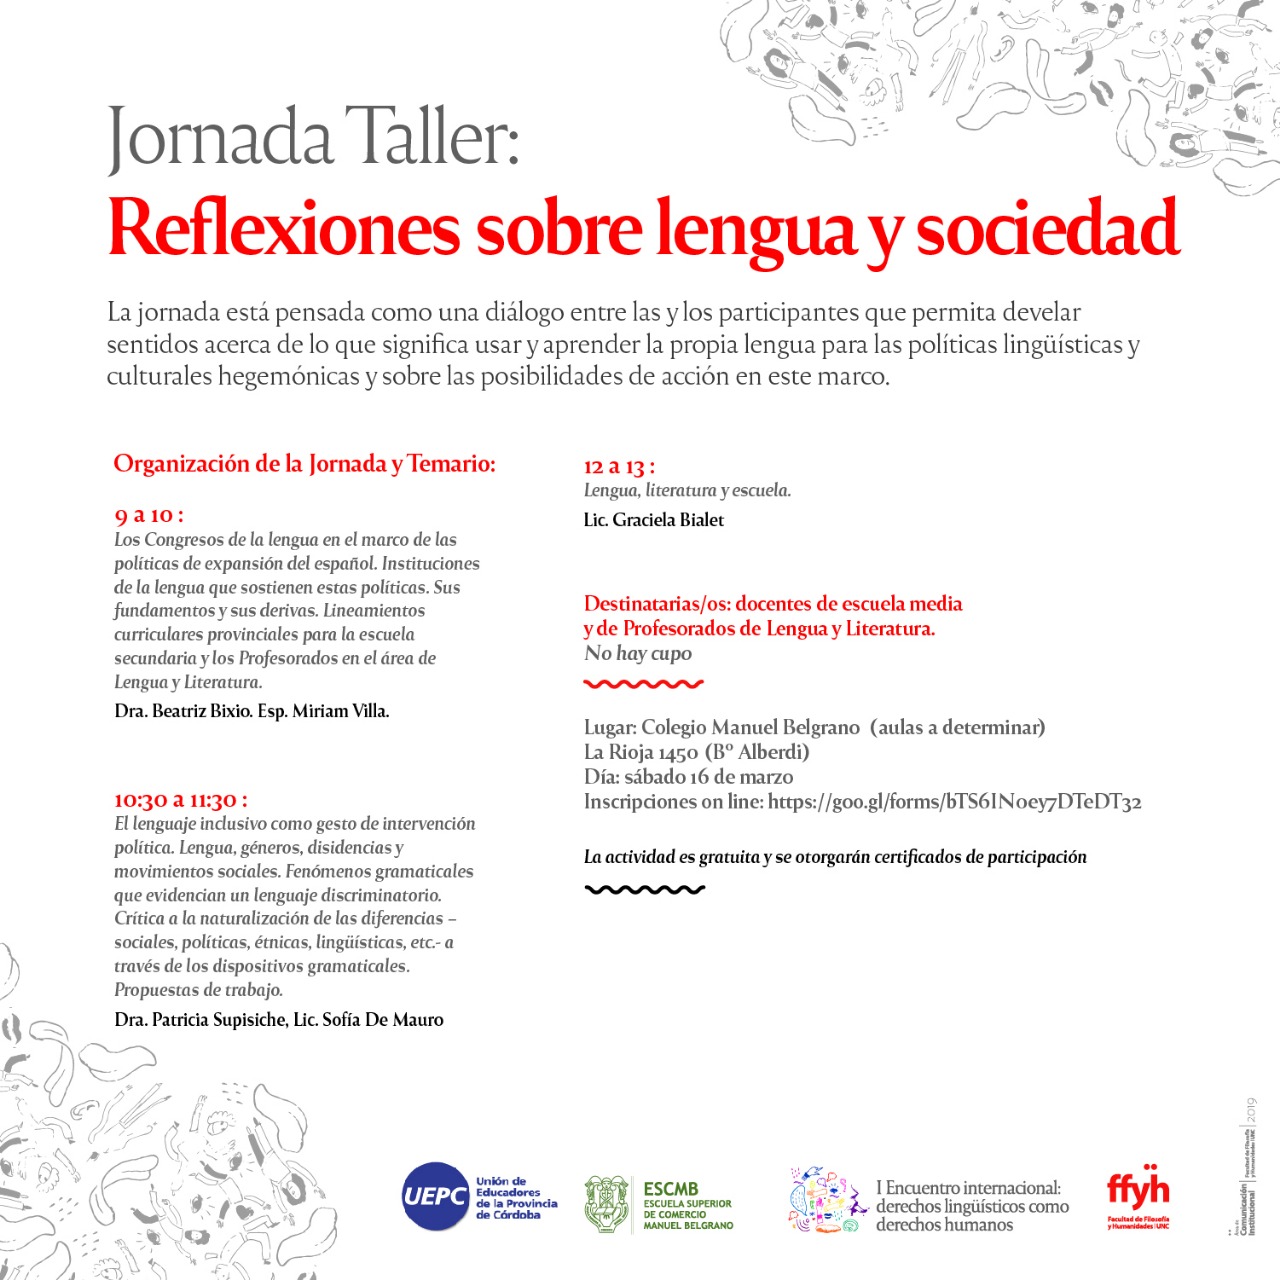 Jornada Taller: Reflexiones sobre lengua y sociedad